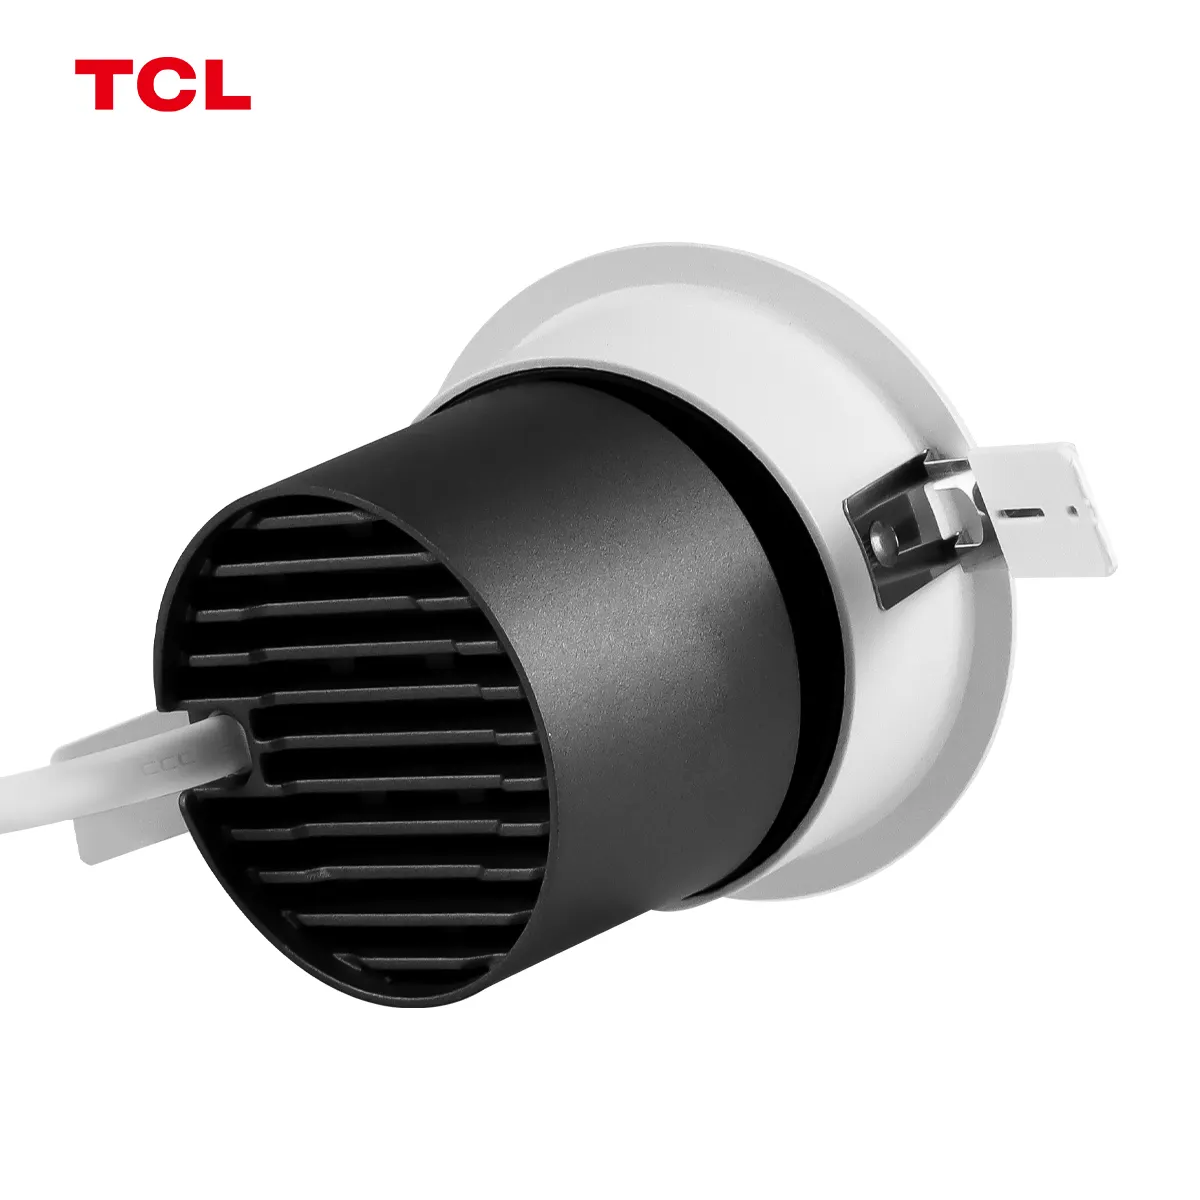 TCL 9W lampu sorot anti silau, lampu sorot hitam tersembunyi, aluminium hitam untuk pencahayaan rumah ruang tamu